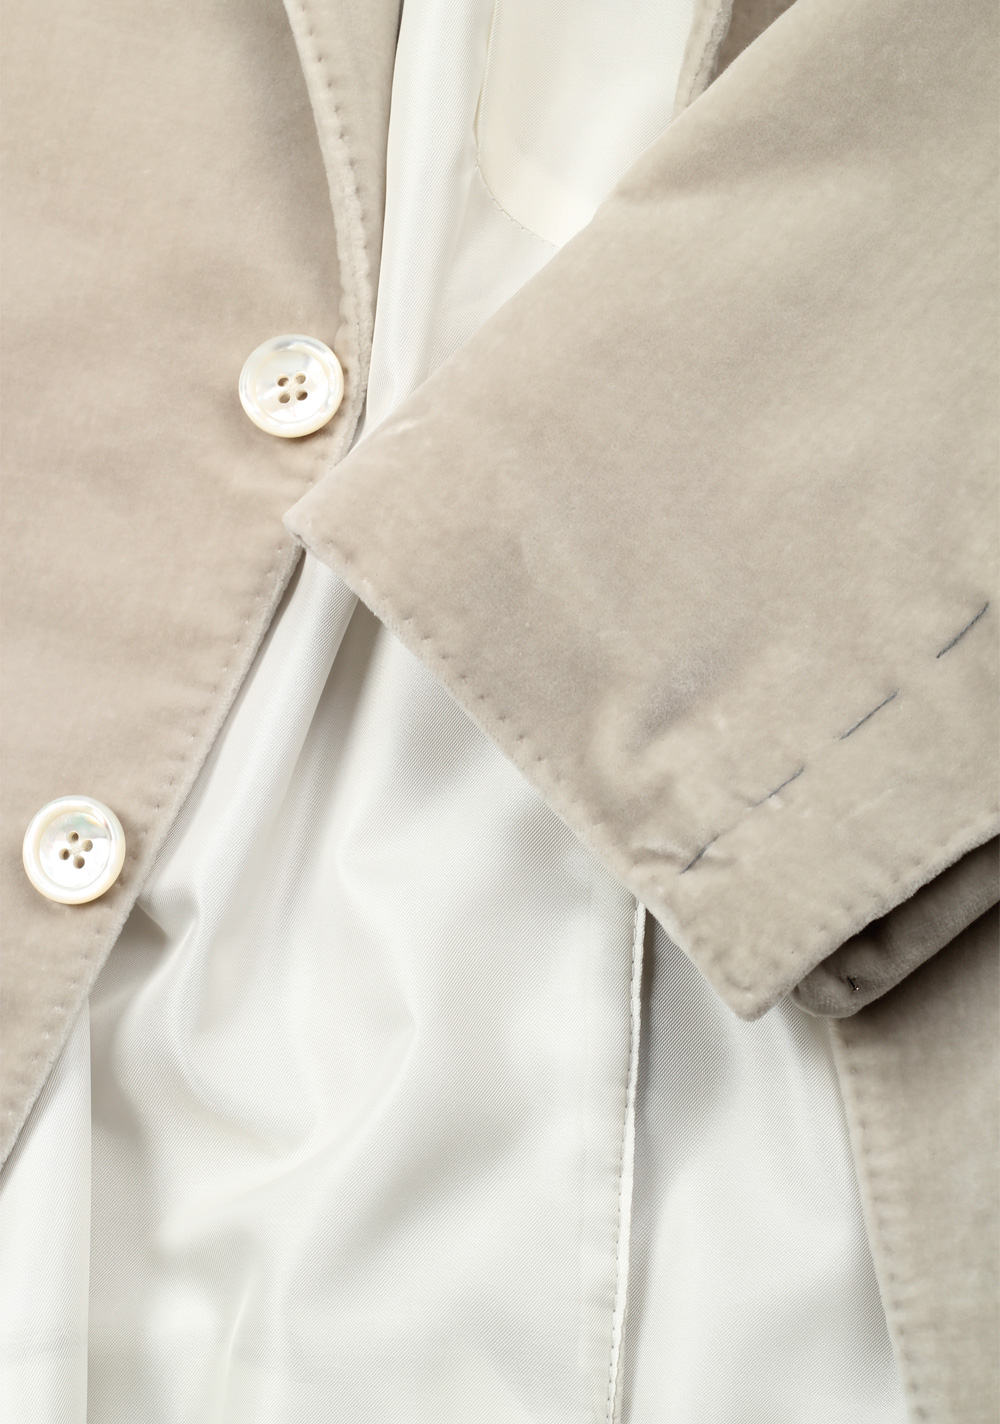 TOM FORD Shelton Velvet Beige Sport Coat Size 50 / 40R U.S. Cotton | Costume Limité